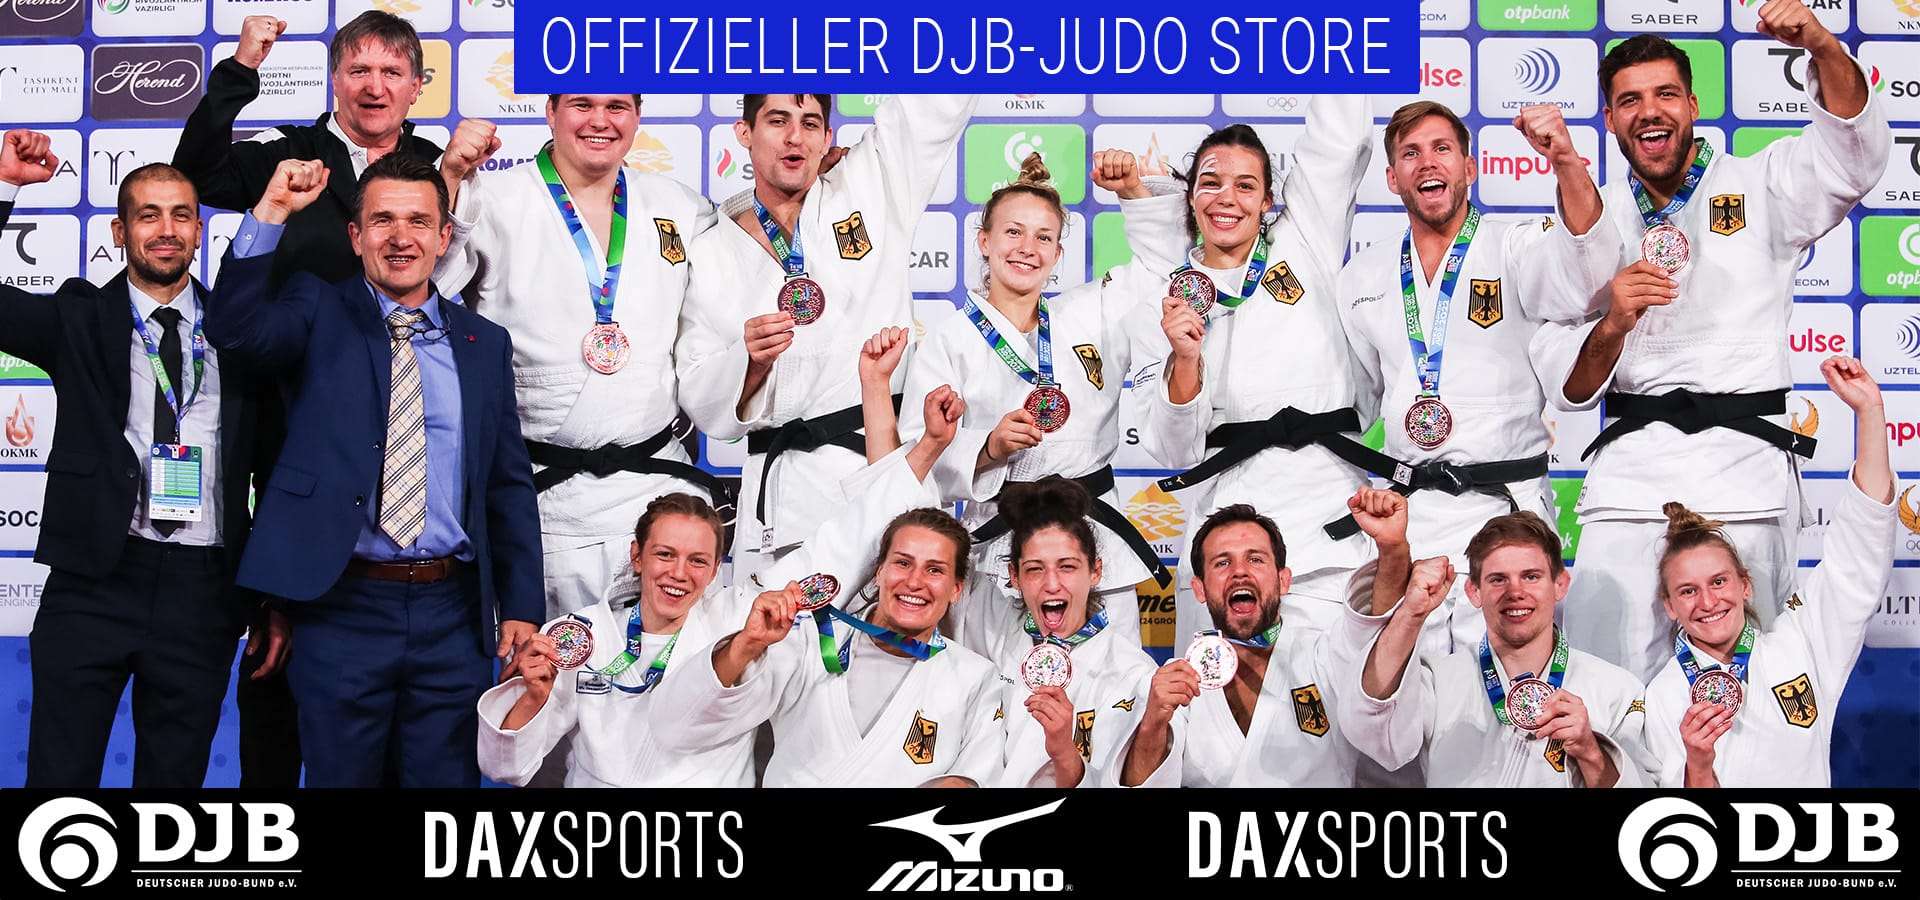 dax judo shop